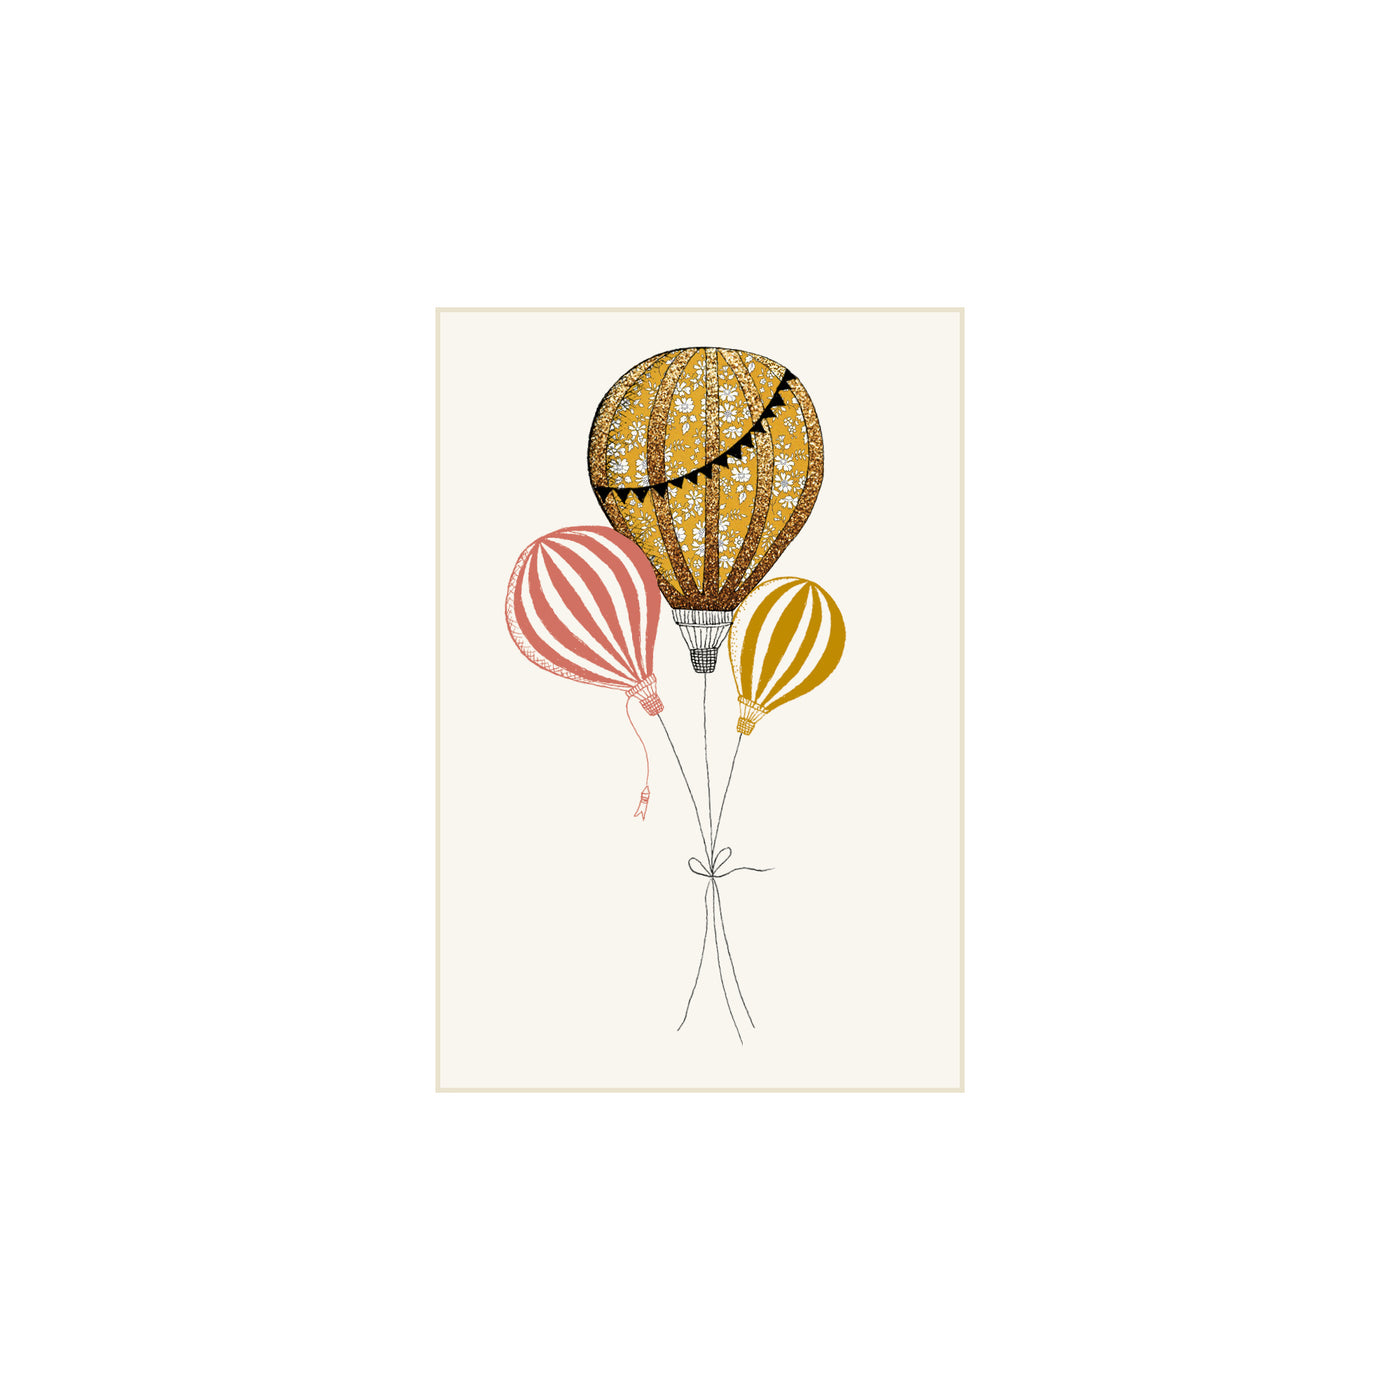 Karrusella print collection A7 kort, Liberty luftballon mustard/rød/mustard